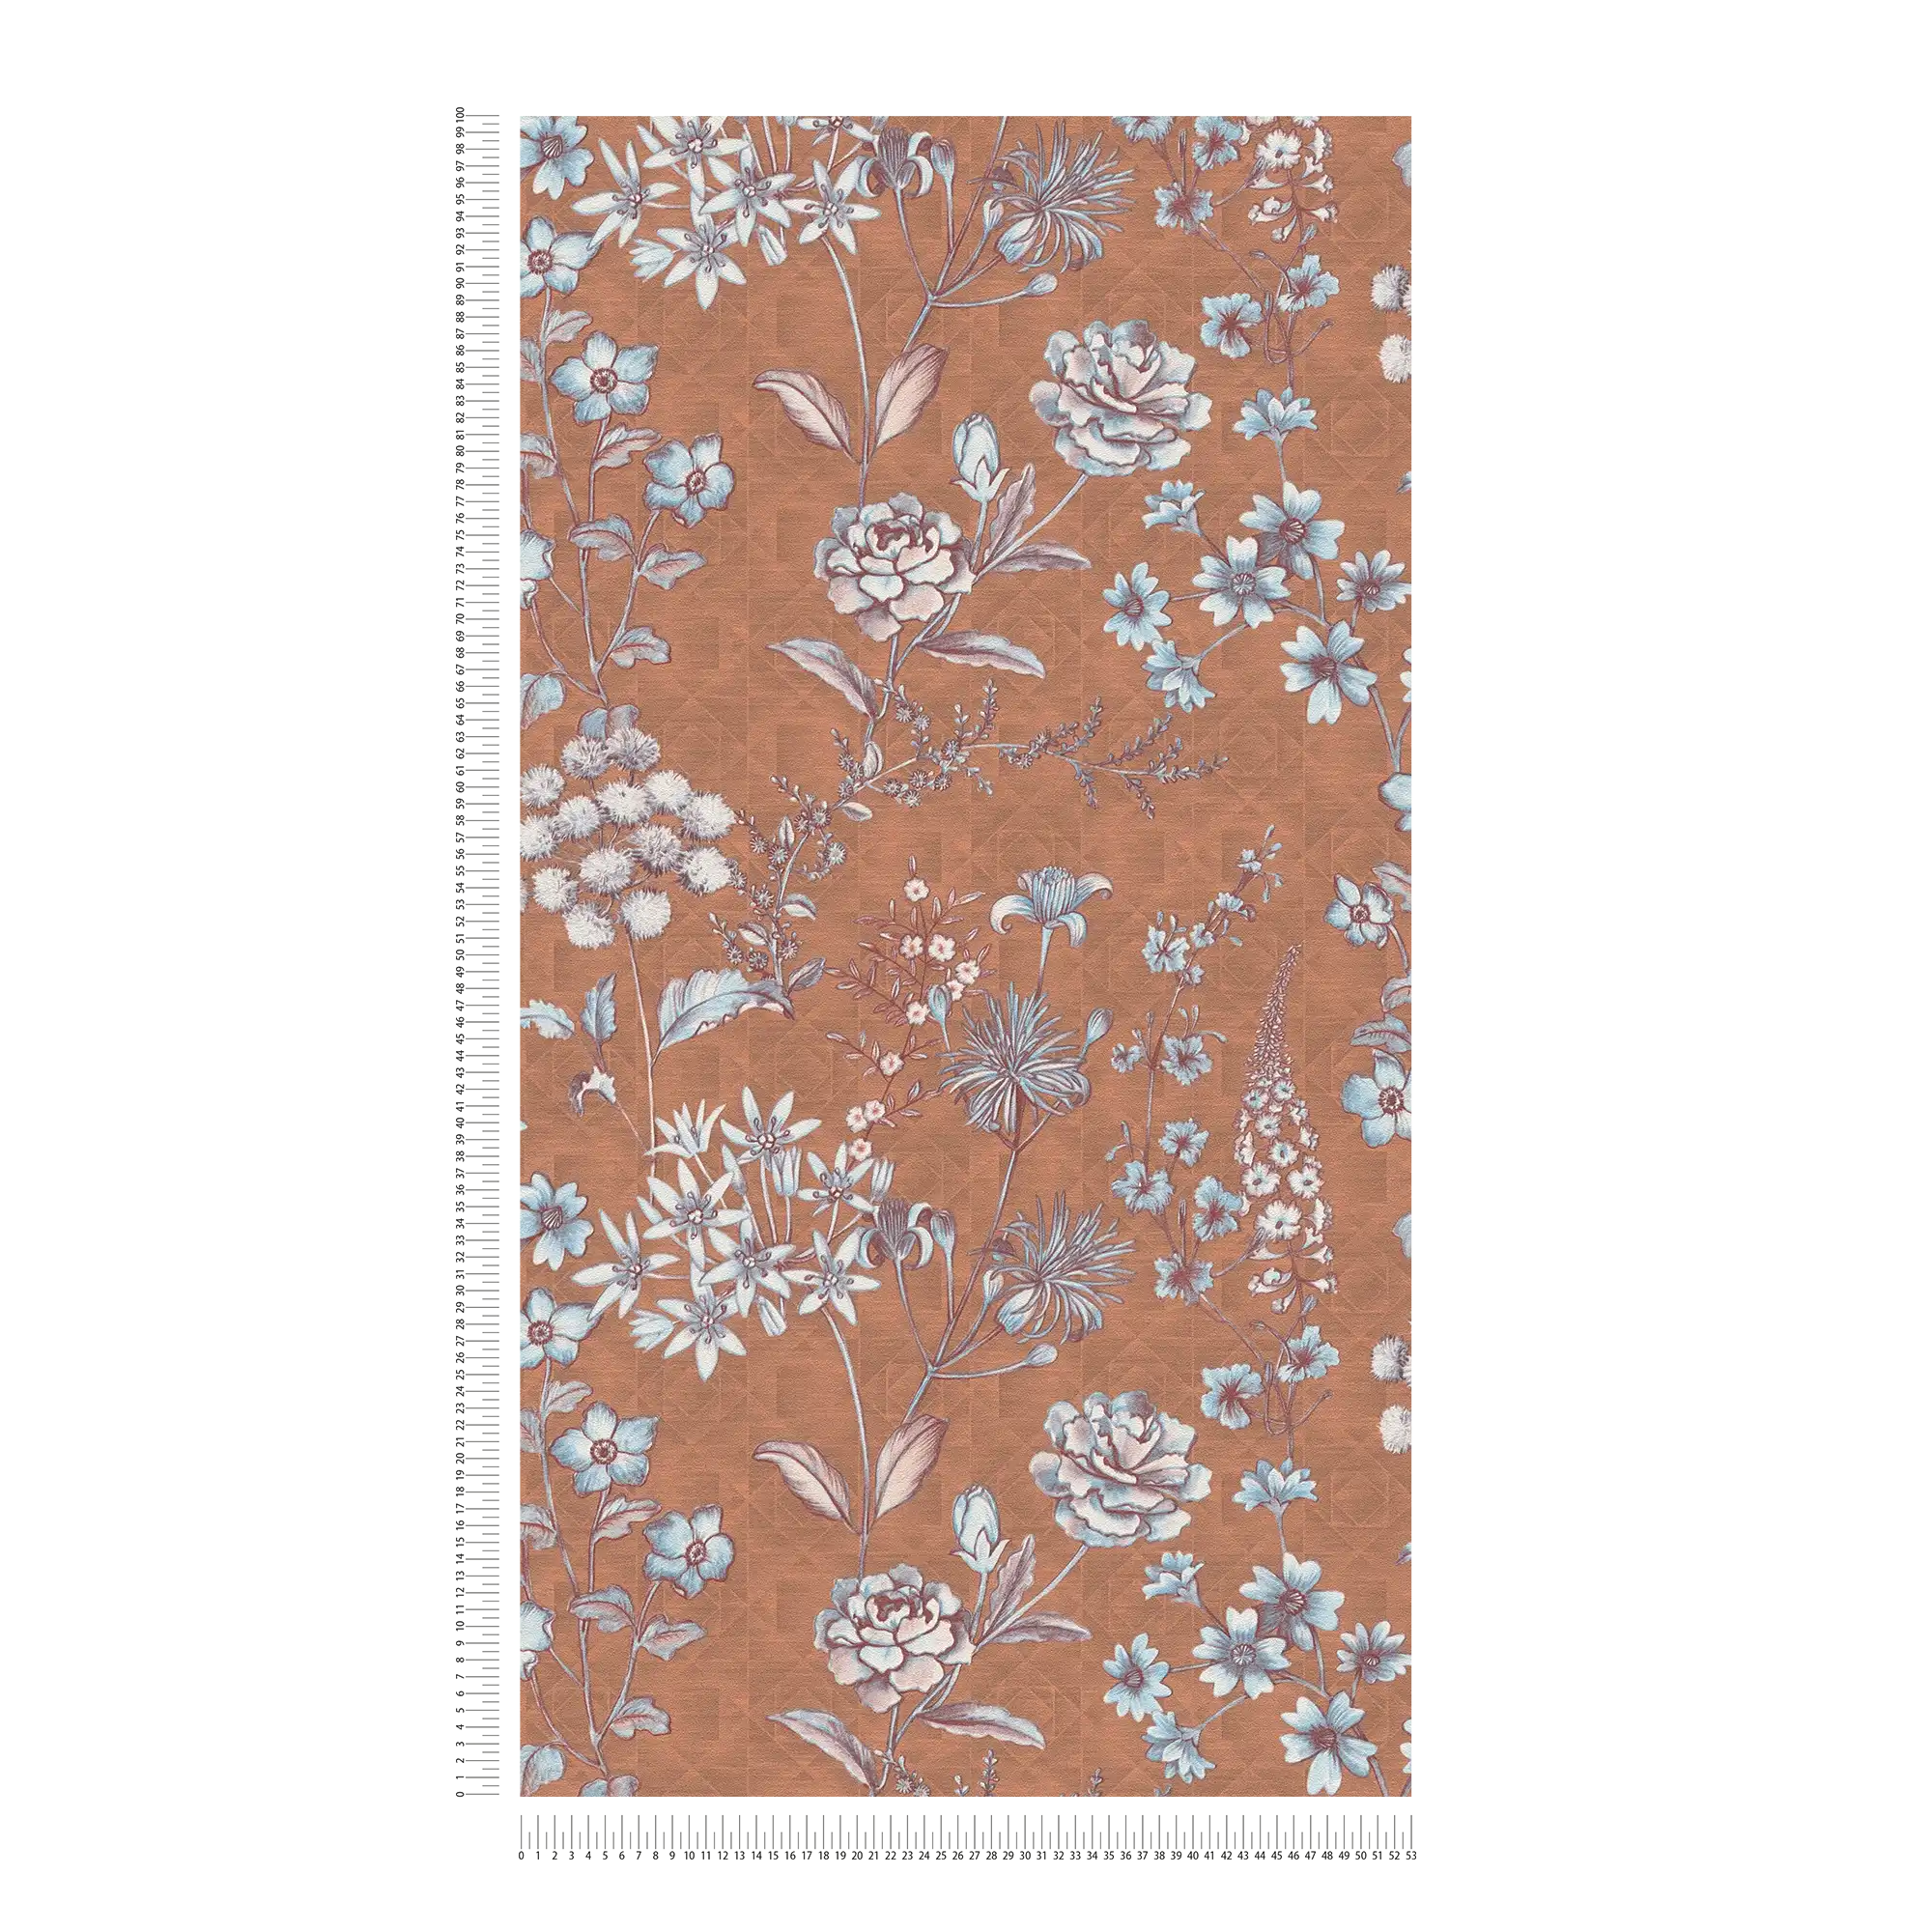             Vintage floral wallpaper with floral pattern - orange, brown, light blue
        